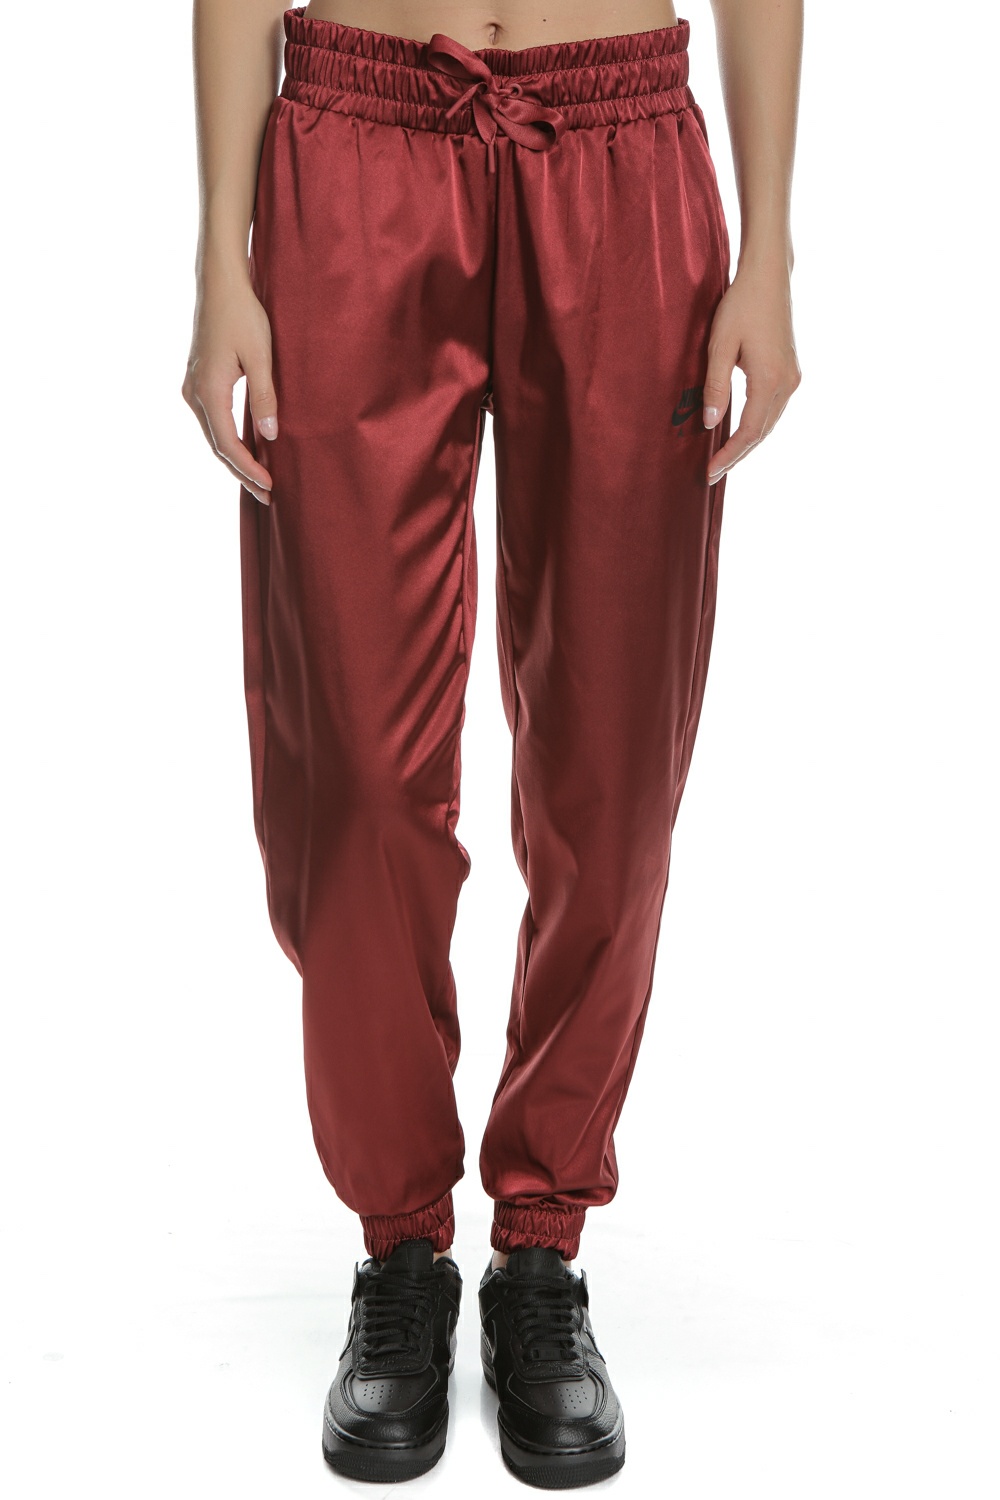 Γυναικεία/Ρούχα/Αθλητικά/Φόρμες NIKE - Γυναικείο παντελόνι φόρμας NIKE NSW AIR TRKN κόκκινο